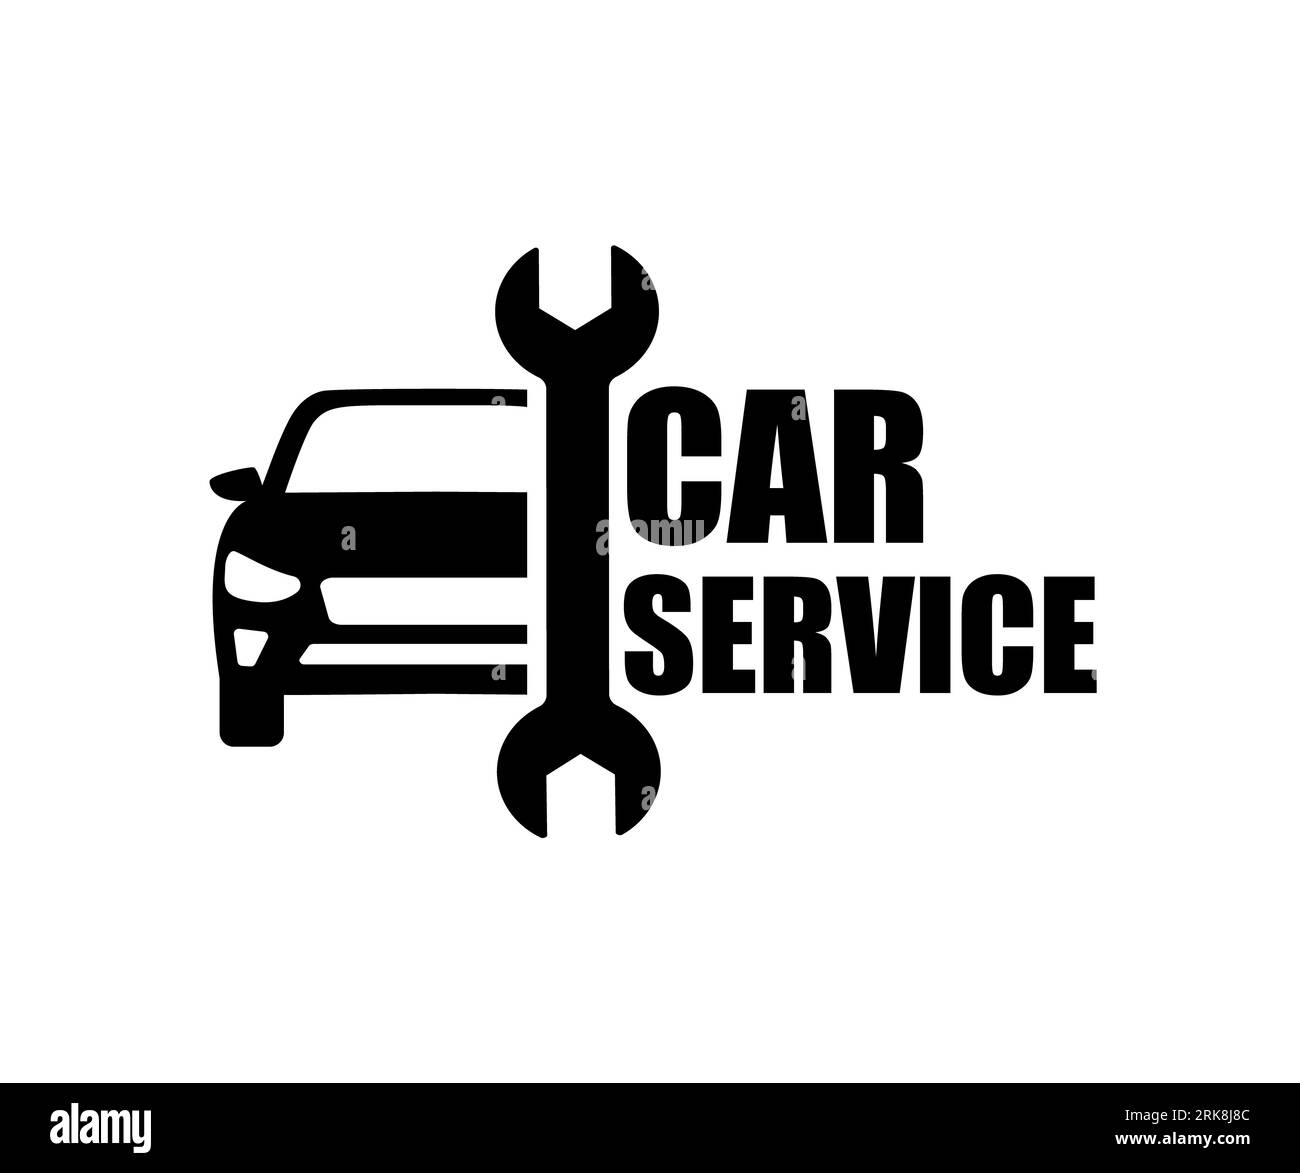 https://c8.alamy.com/compde/2rk8j8c/car-service-logo-vektorgrafik-mit-auto-und-schraubenschlussel-2rk8j8c.jpg